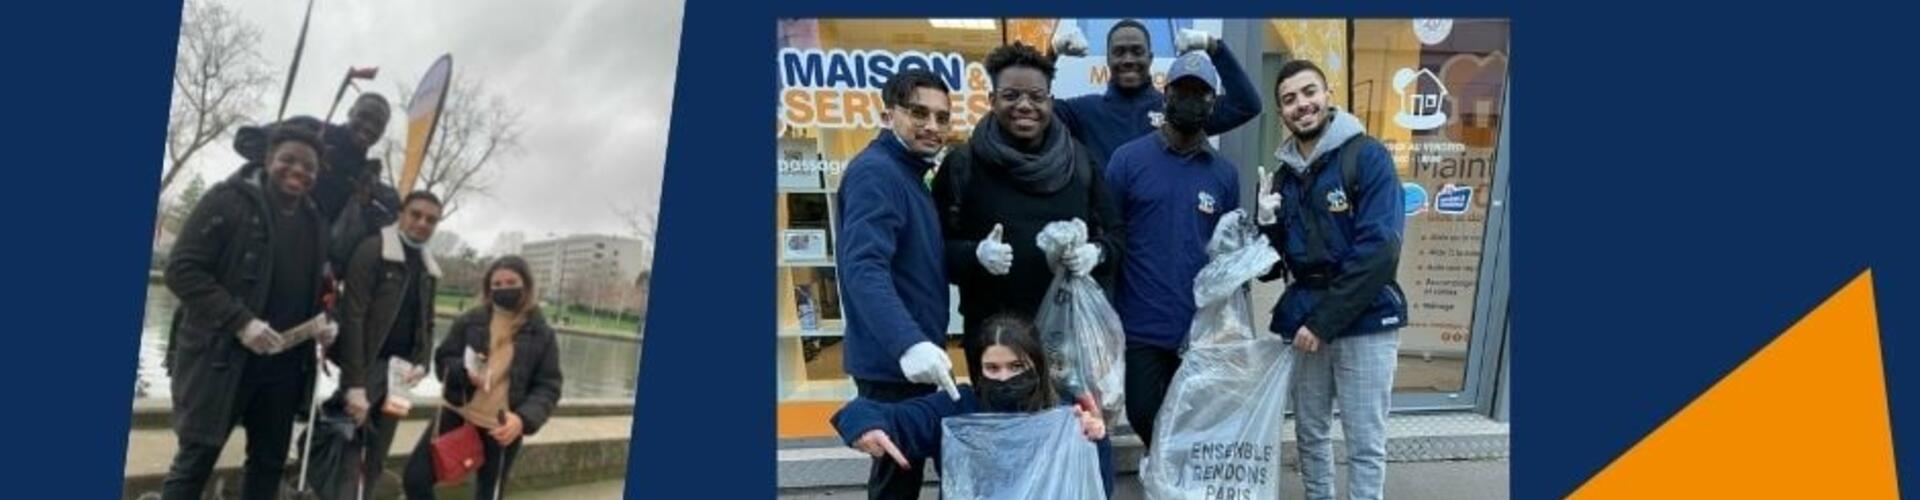 Actualité -  MAISON ET SERVICES PARIS  nettoie la ville de Paris